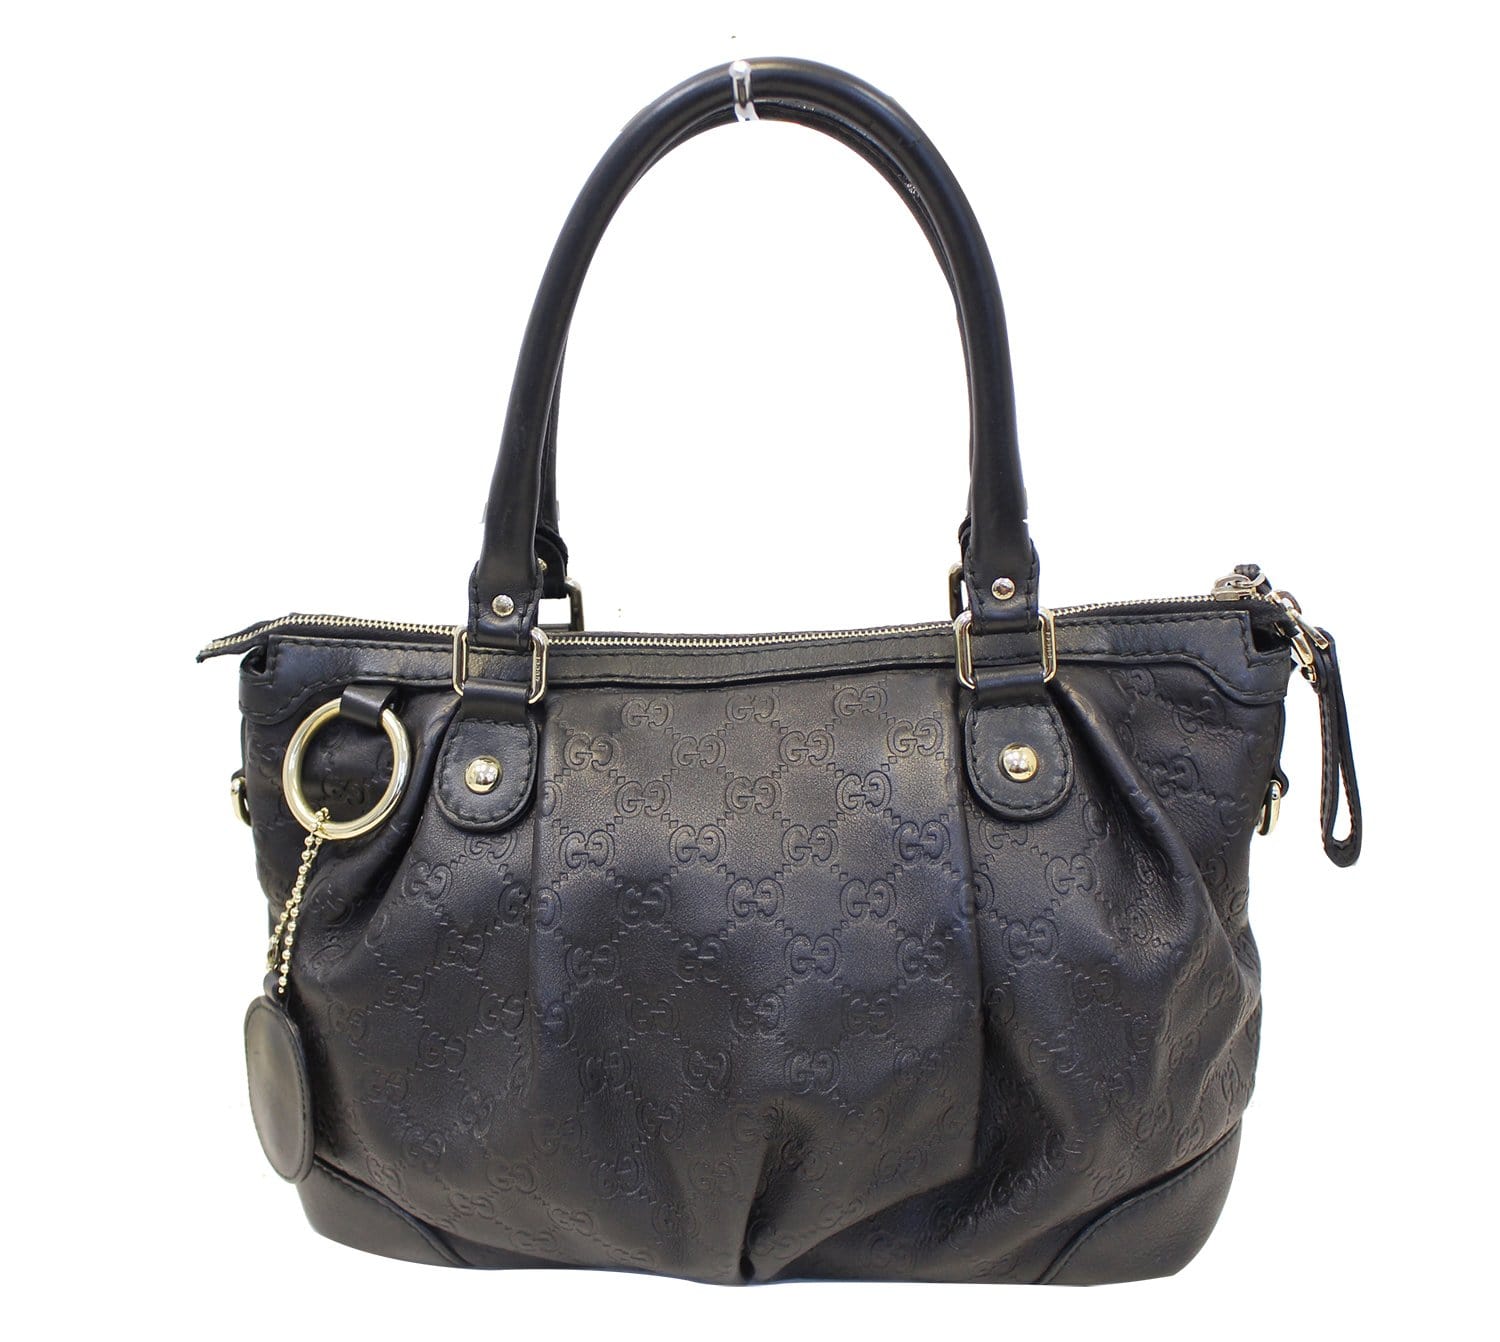 Tiffany Checkered Handbag – Sweet Southern Shore